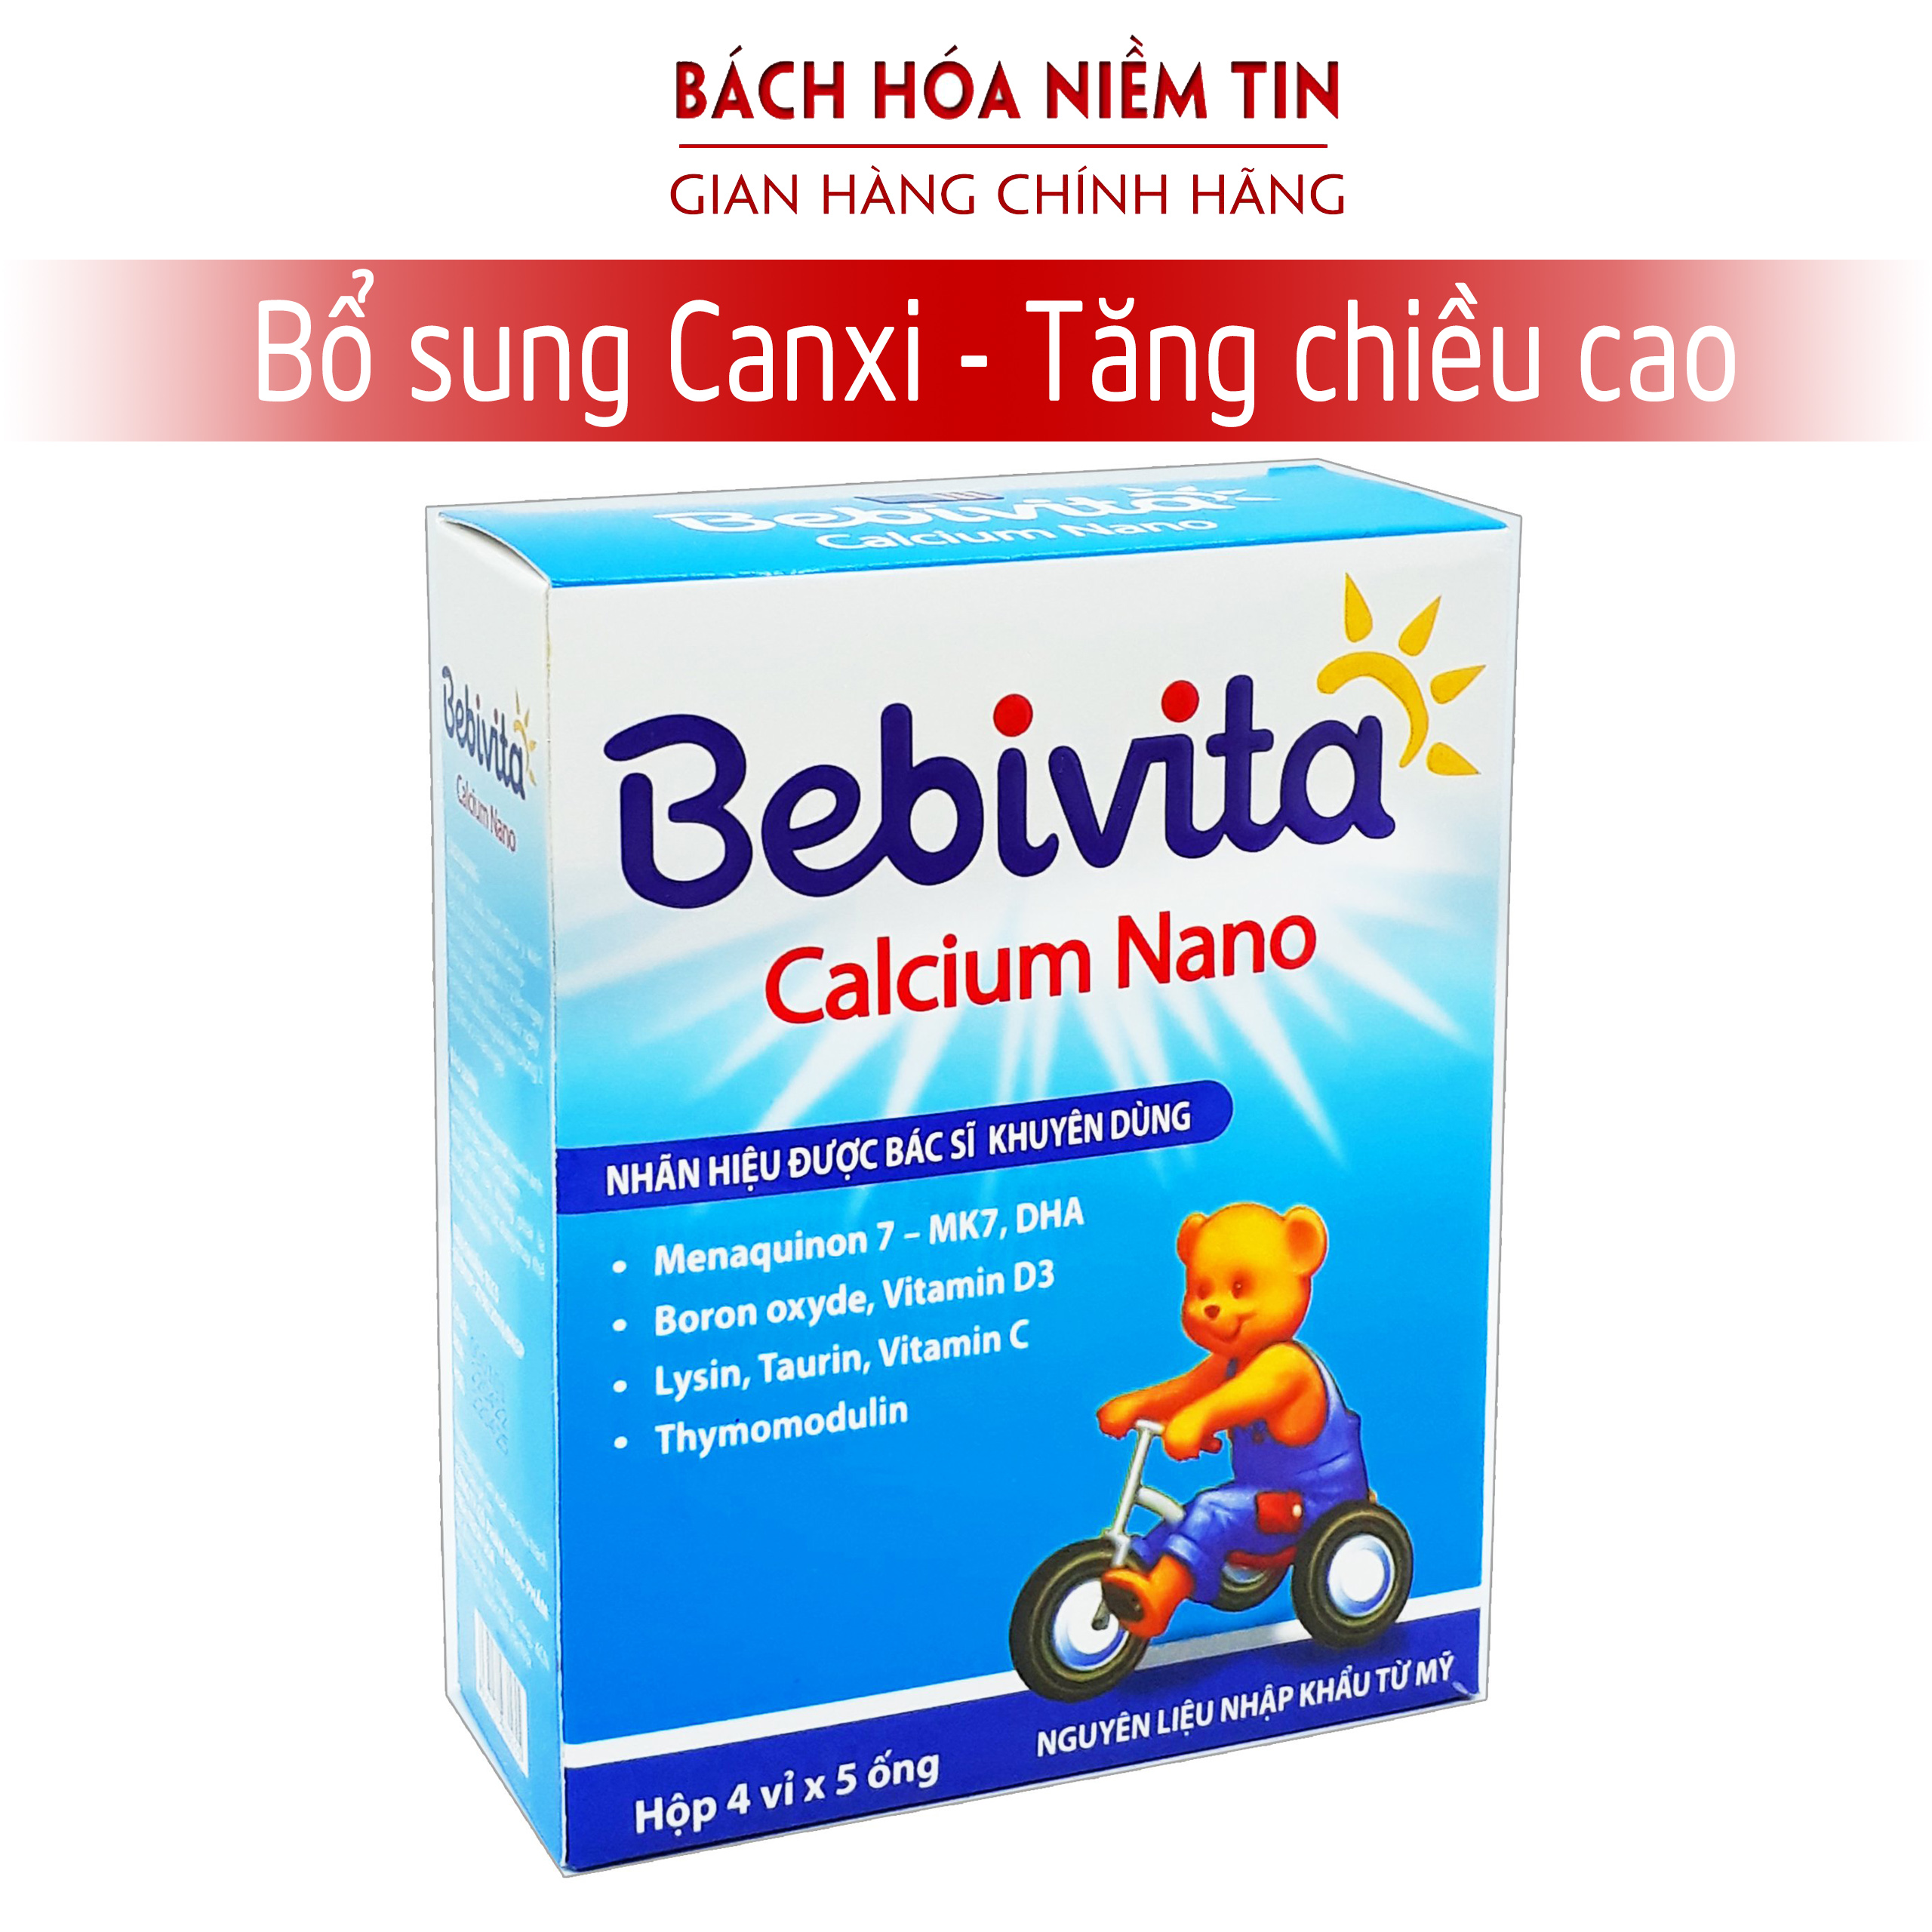 Siro bổ sung canxi cho bé Bebivita Calcium Nano - bổ sung canxi, vitamin D3, K2, DHA giúp phát triển chiều cao, giảm còi xương ở trẻ từ 1 tuổi - Hộp 20 ống Hàng chính hãng